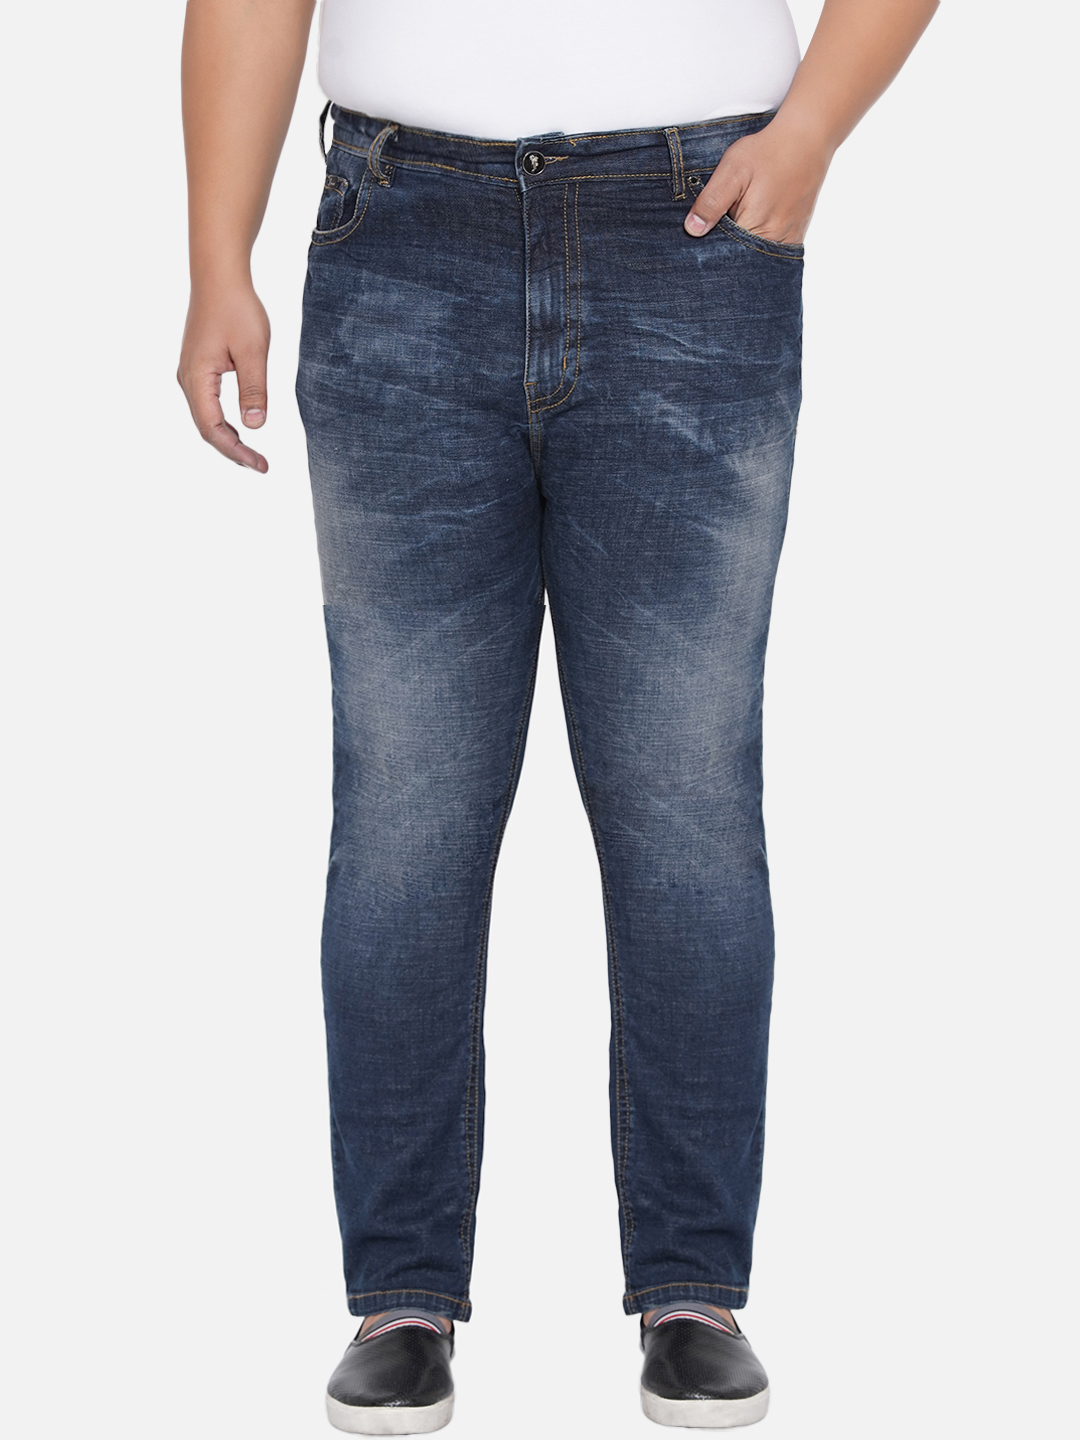 bottomwear/jeans/PJPJ6045/pjpj6045-3.jpg